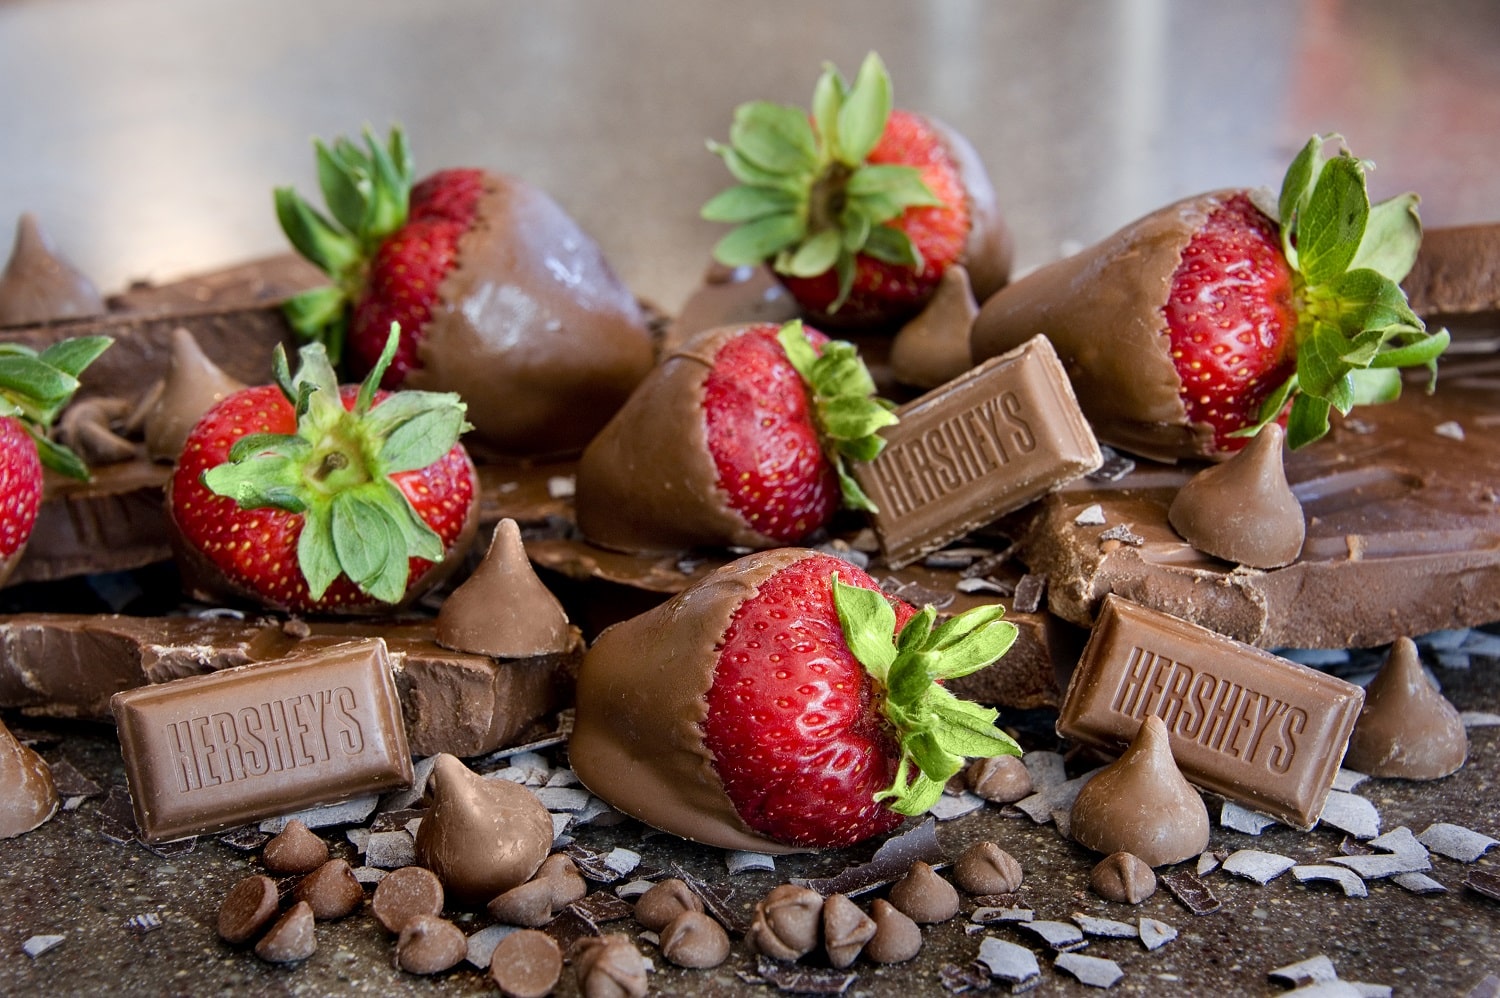 Hershey's Chocolate Dipped Strawberries